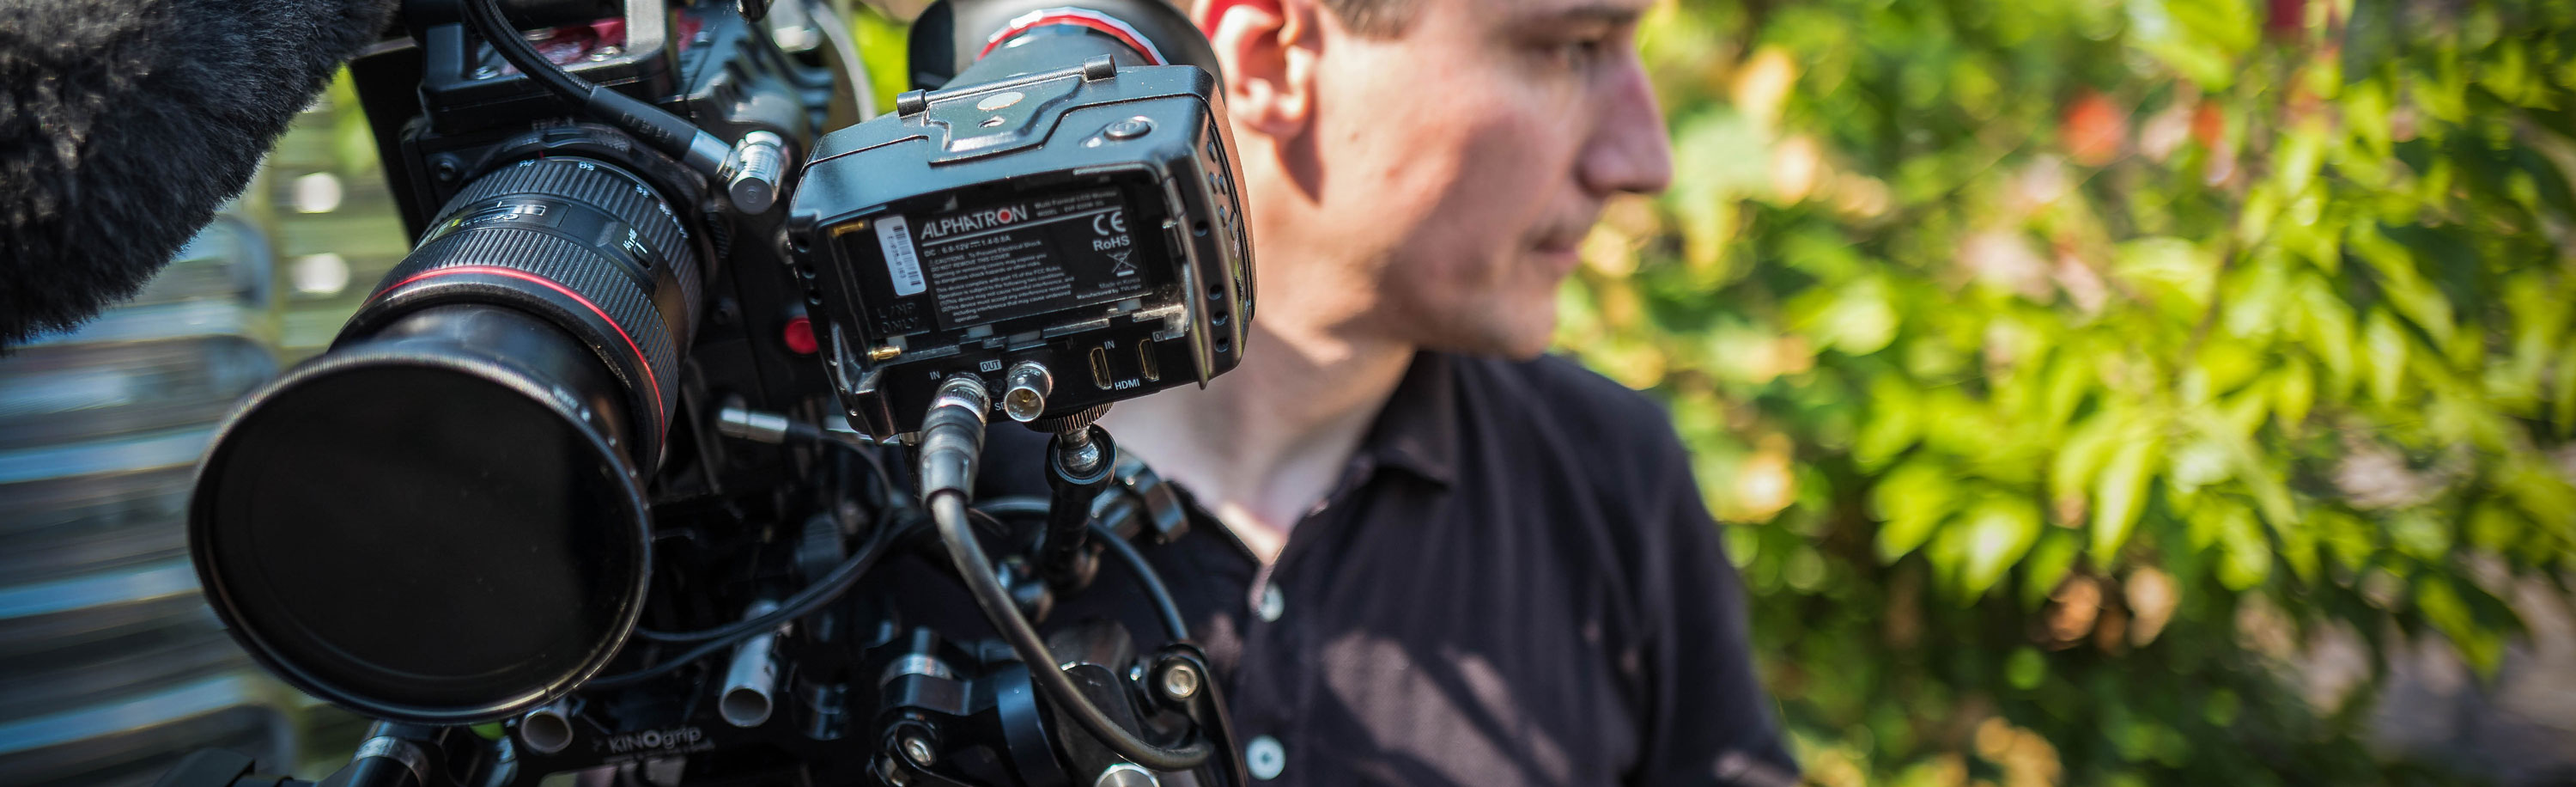 RED-Kamera bei einer Filmproduktion im Ausland